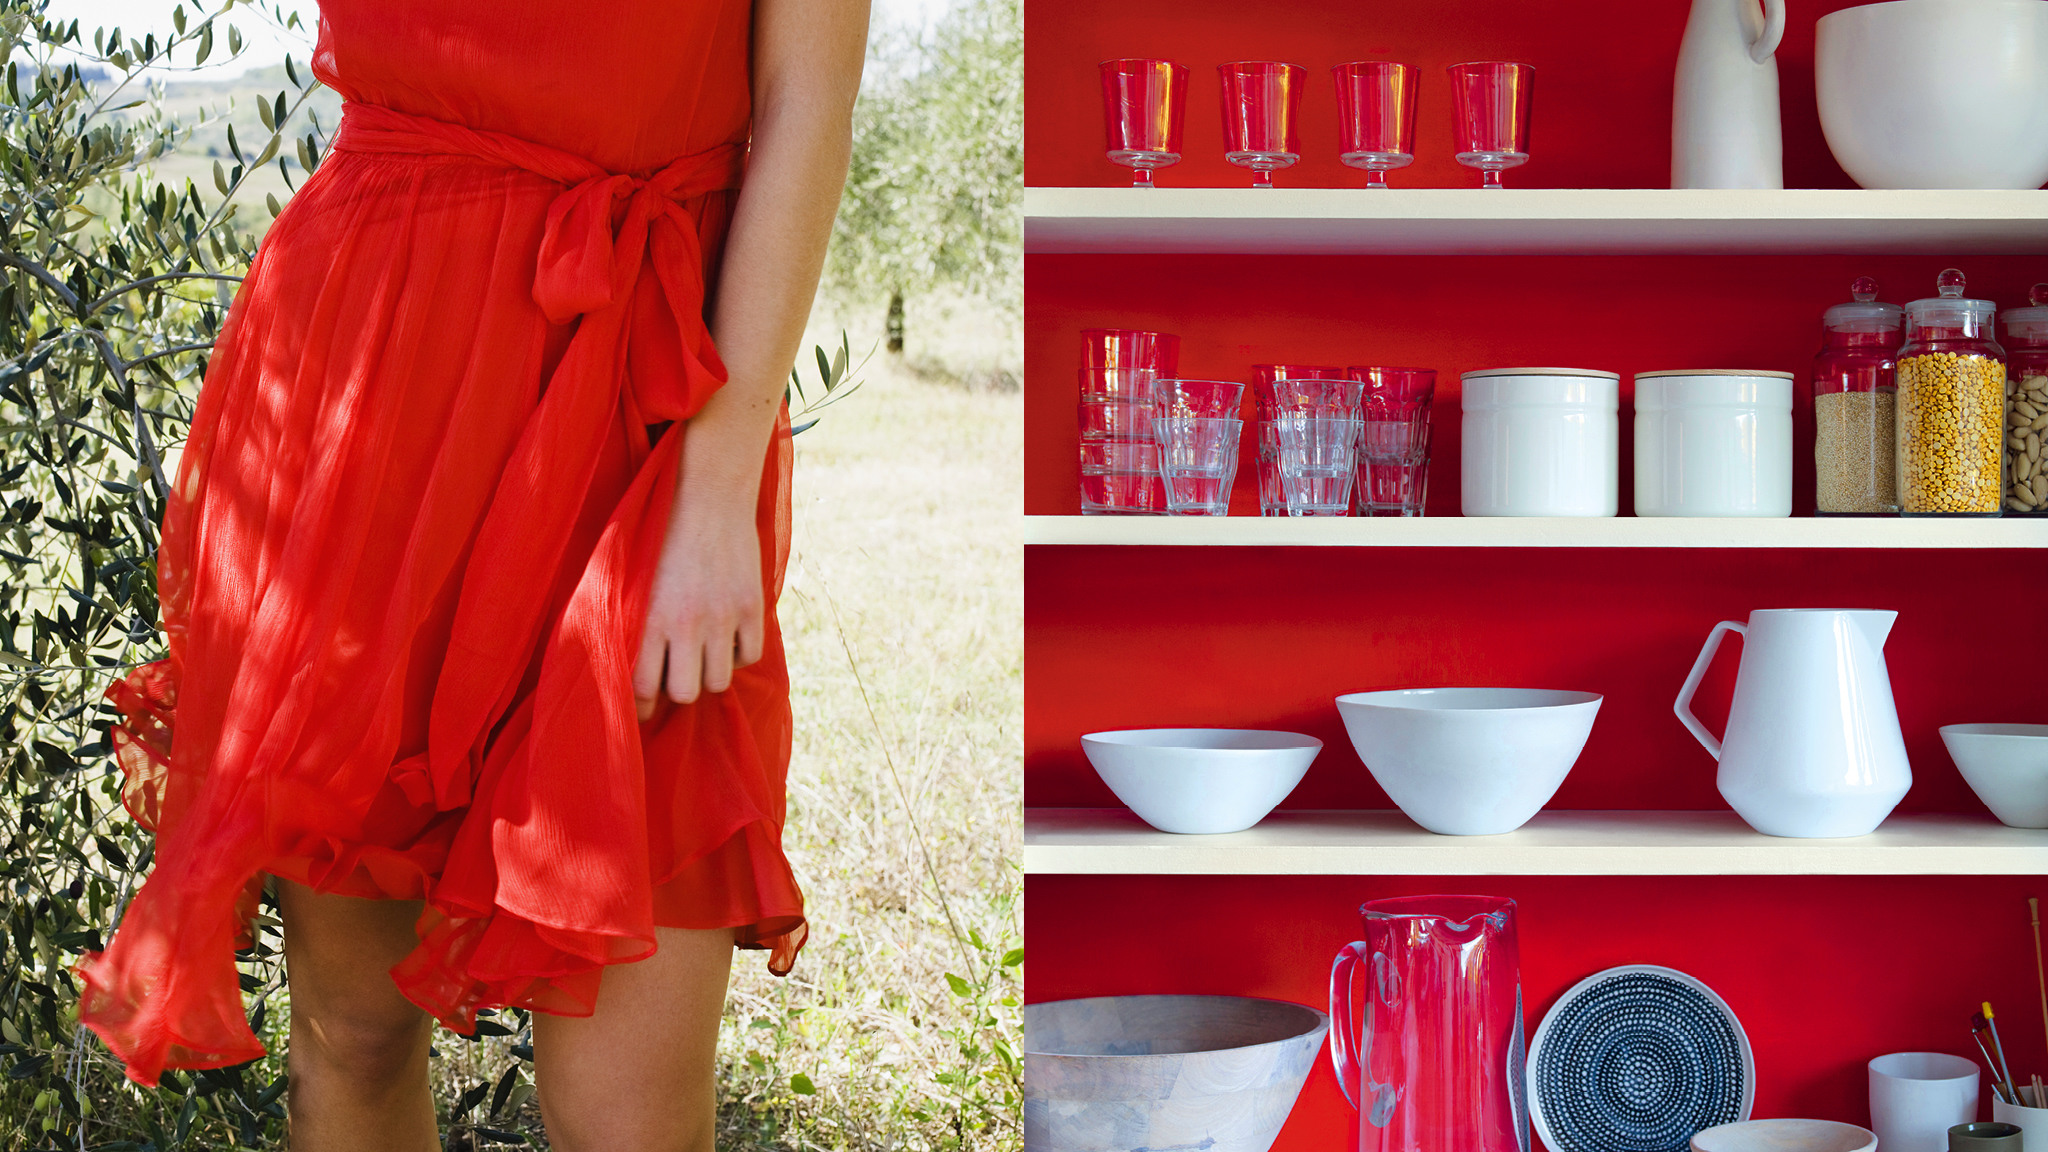 Chiếc váy đỏ xinh xắn hoặc chiếc áo màu xanh da trời yêu thích cũng như là quần áo của bạn có thể là chìa khóa mở ra cho bạn ý tưởng trang trí.